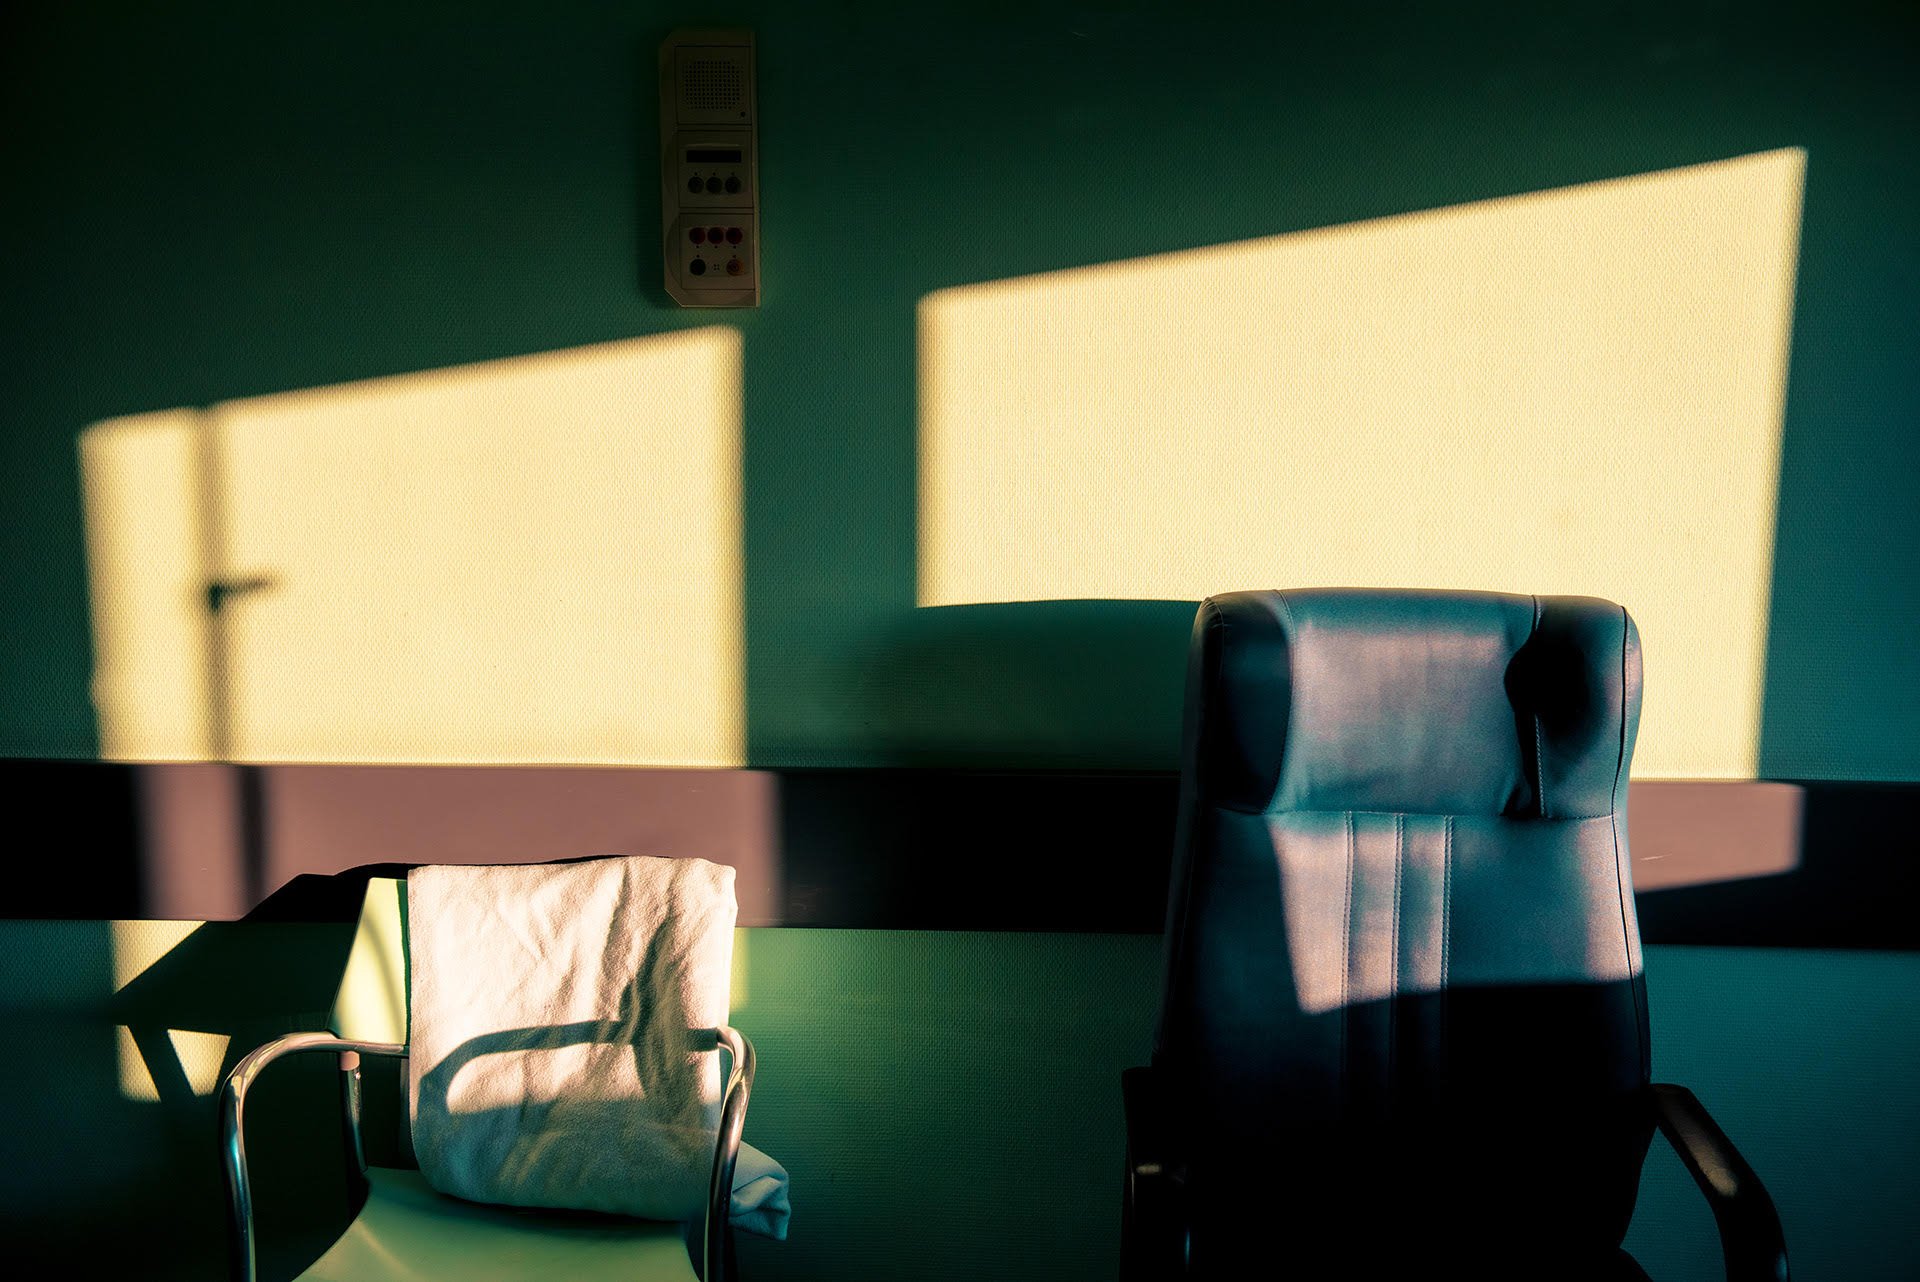 Un poético diario fotográfico de salas de espera de hospital, por Jaime Oriz